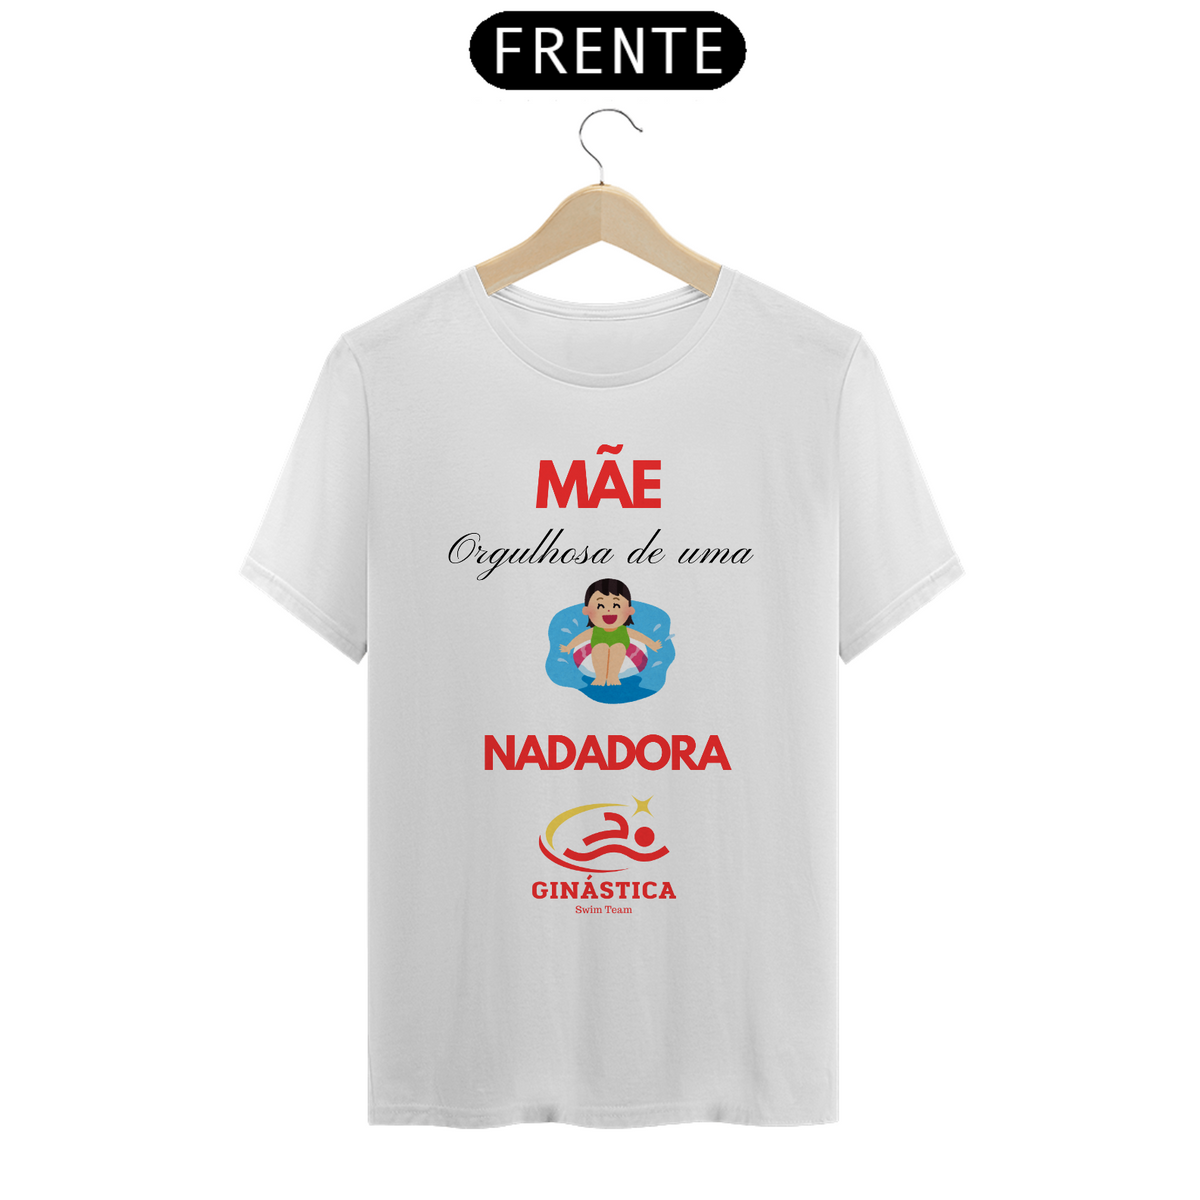 Nome do produto: Camiseta Mãe Nadadora